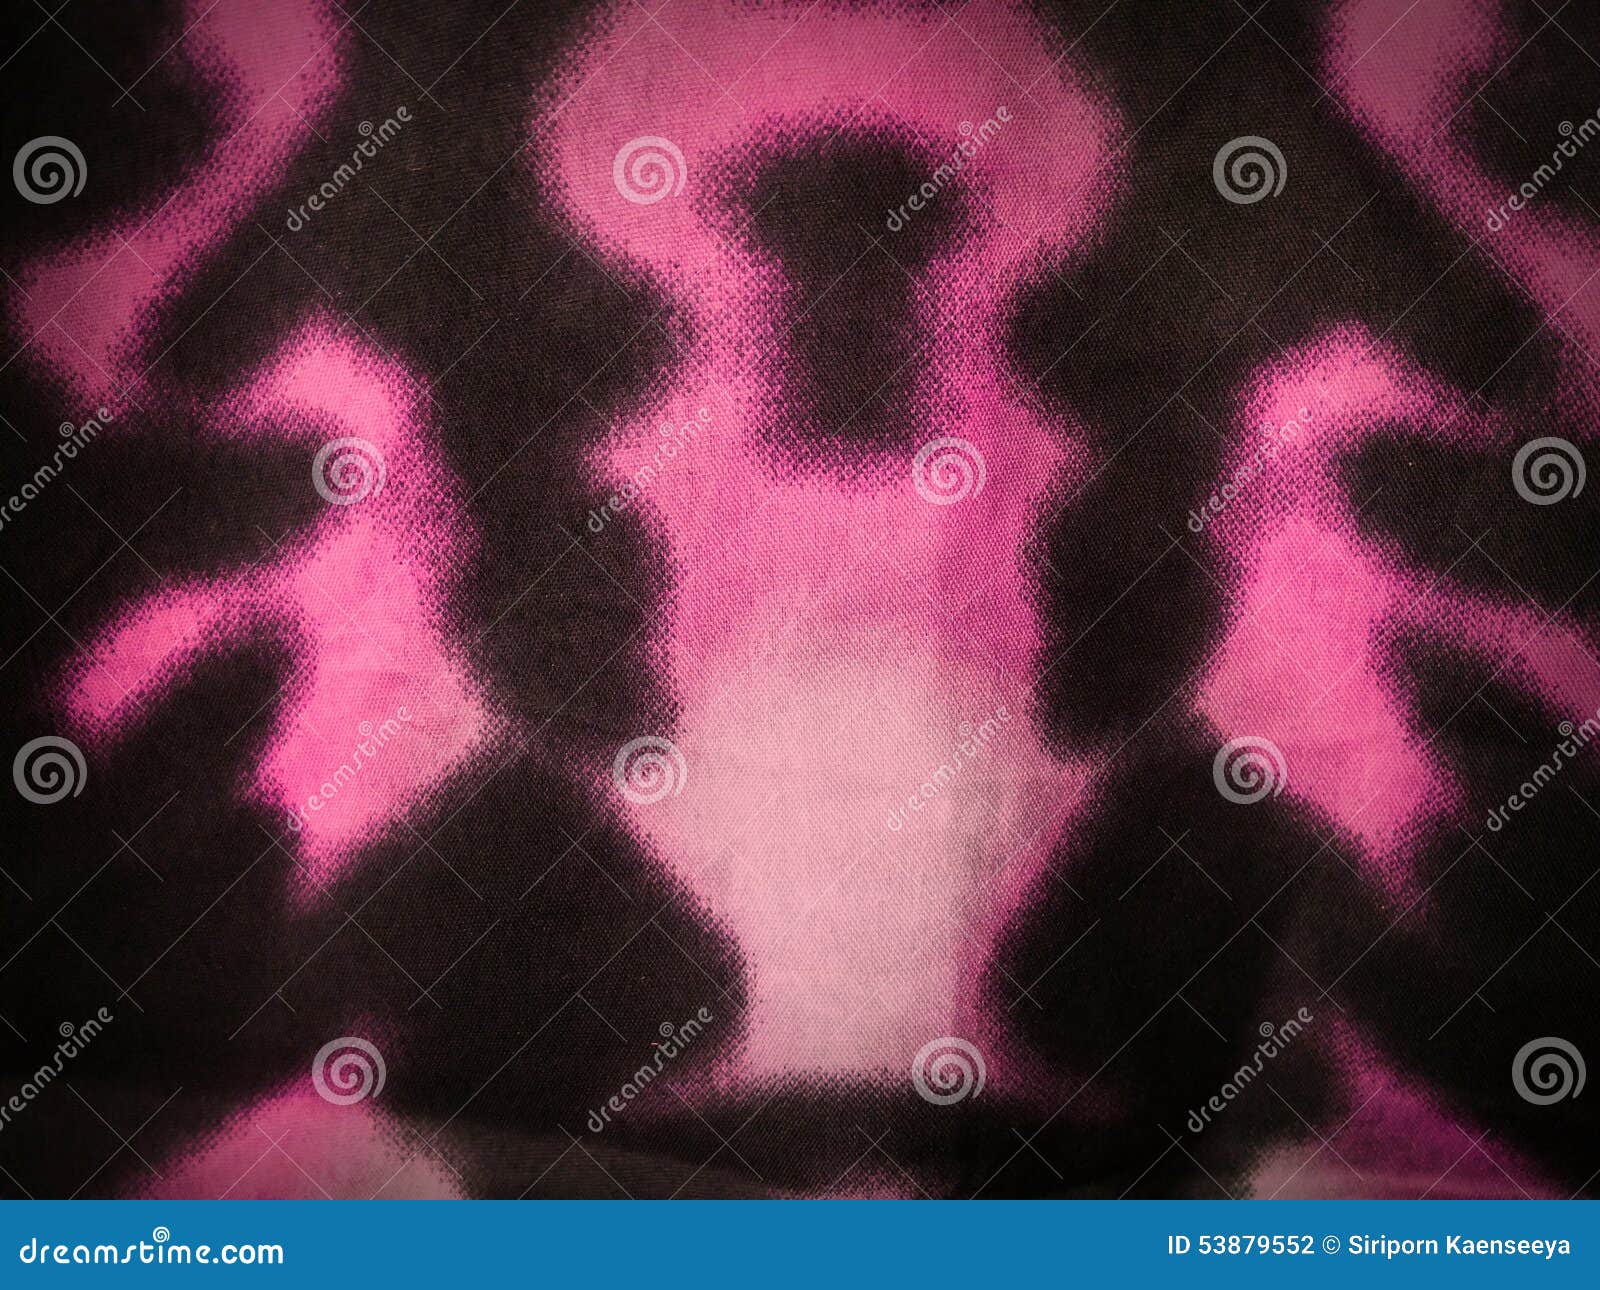 Hãy chiêm ngưỡng những họa tiết hoa văn trang trí nền nhuộm màu hồng tươi sáng và tinh tế. Hình nền sẽ mang đến cho bạn cảm giác dịu dàng và tươi mới khi sử dụng máy tính.